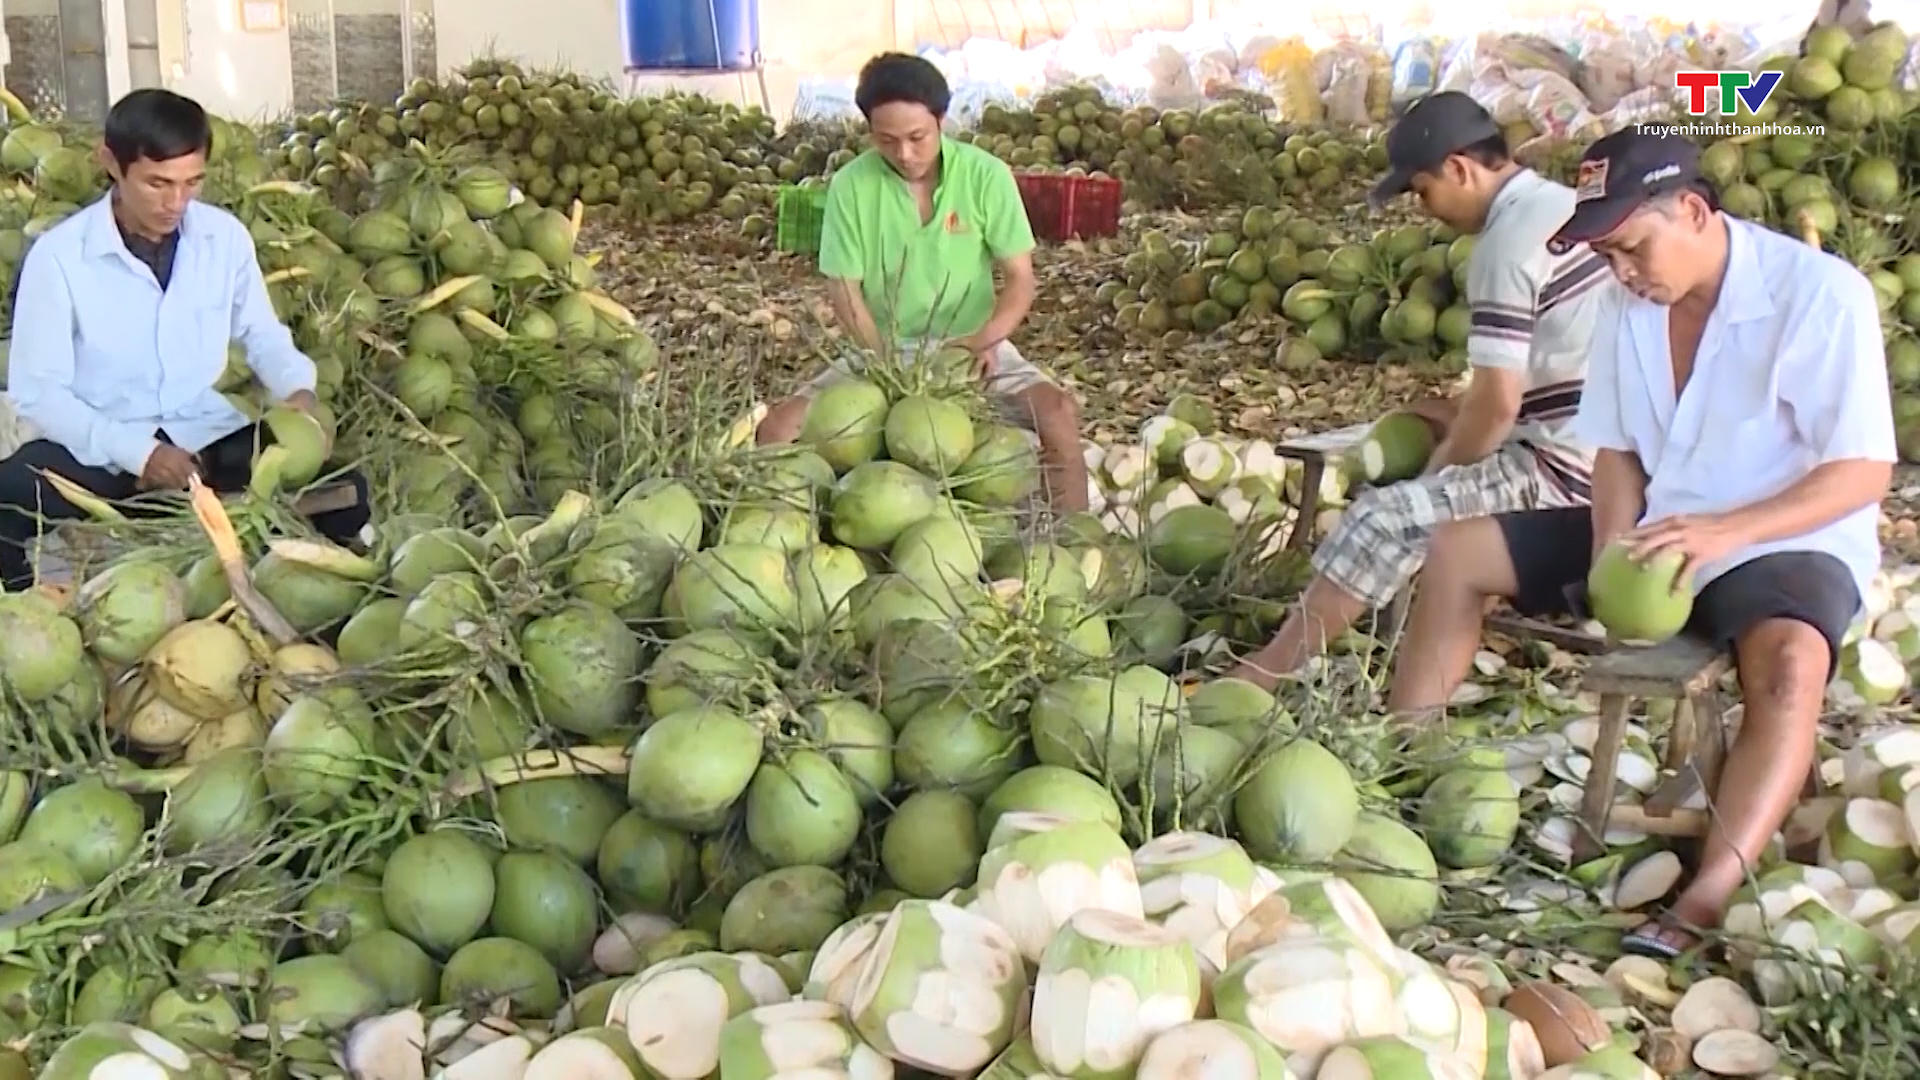 Xuất khẩu gần 1 tỷ đô sắp đưa dừa vào nhóm ngành xuất khẩu mũi nhọn - Ảnh 2.